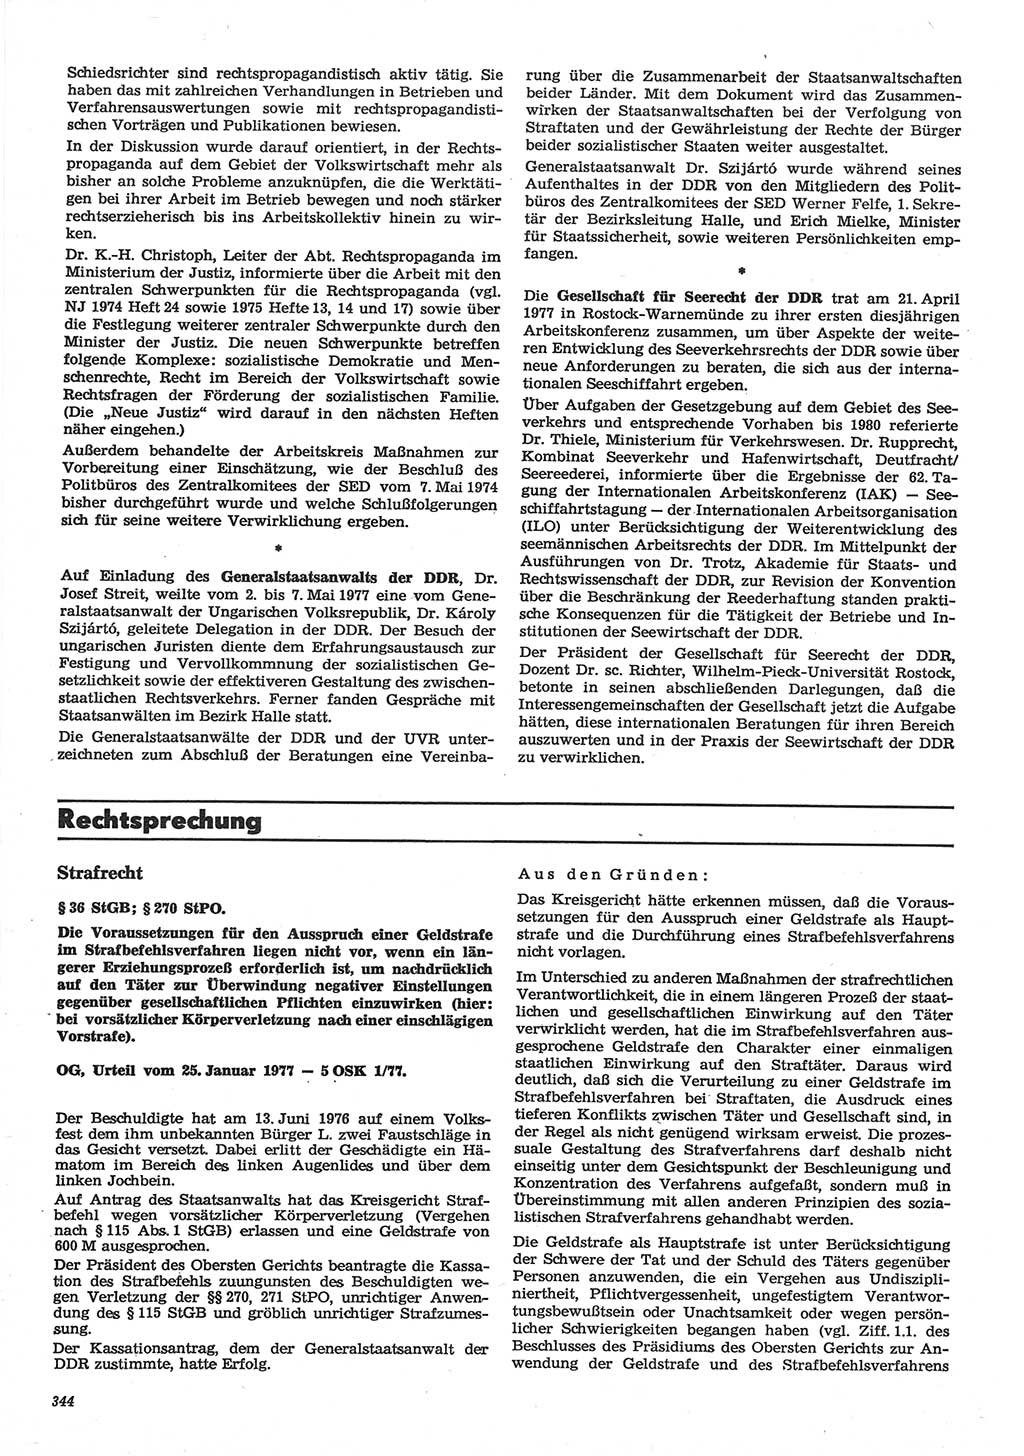 Neue Justiz (NJ), Zeitschrift für Recht und Rechtswissenschaft-Zeitschrift, sozialistisches Recht und Gesetzlichkeit, 31. Jahrgang 1977, Seite 344 (NJ DDR 1977, S. 344)